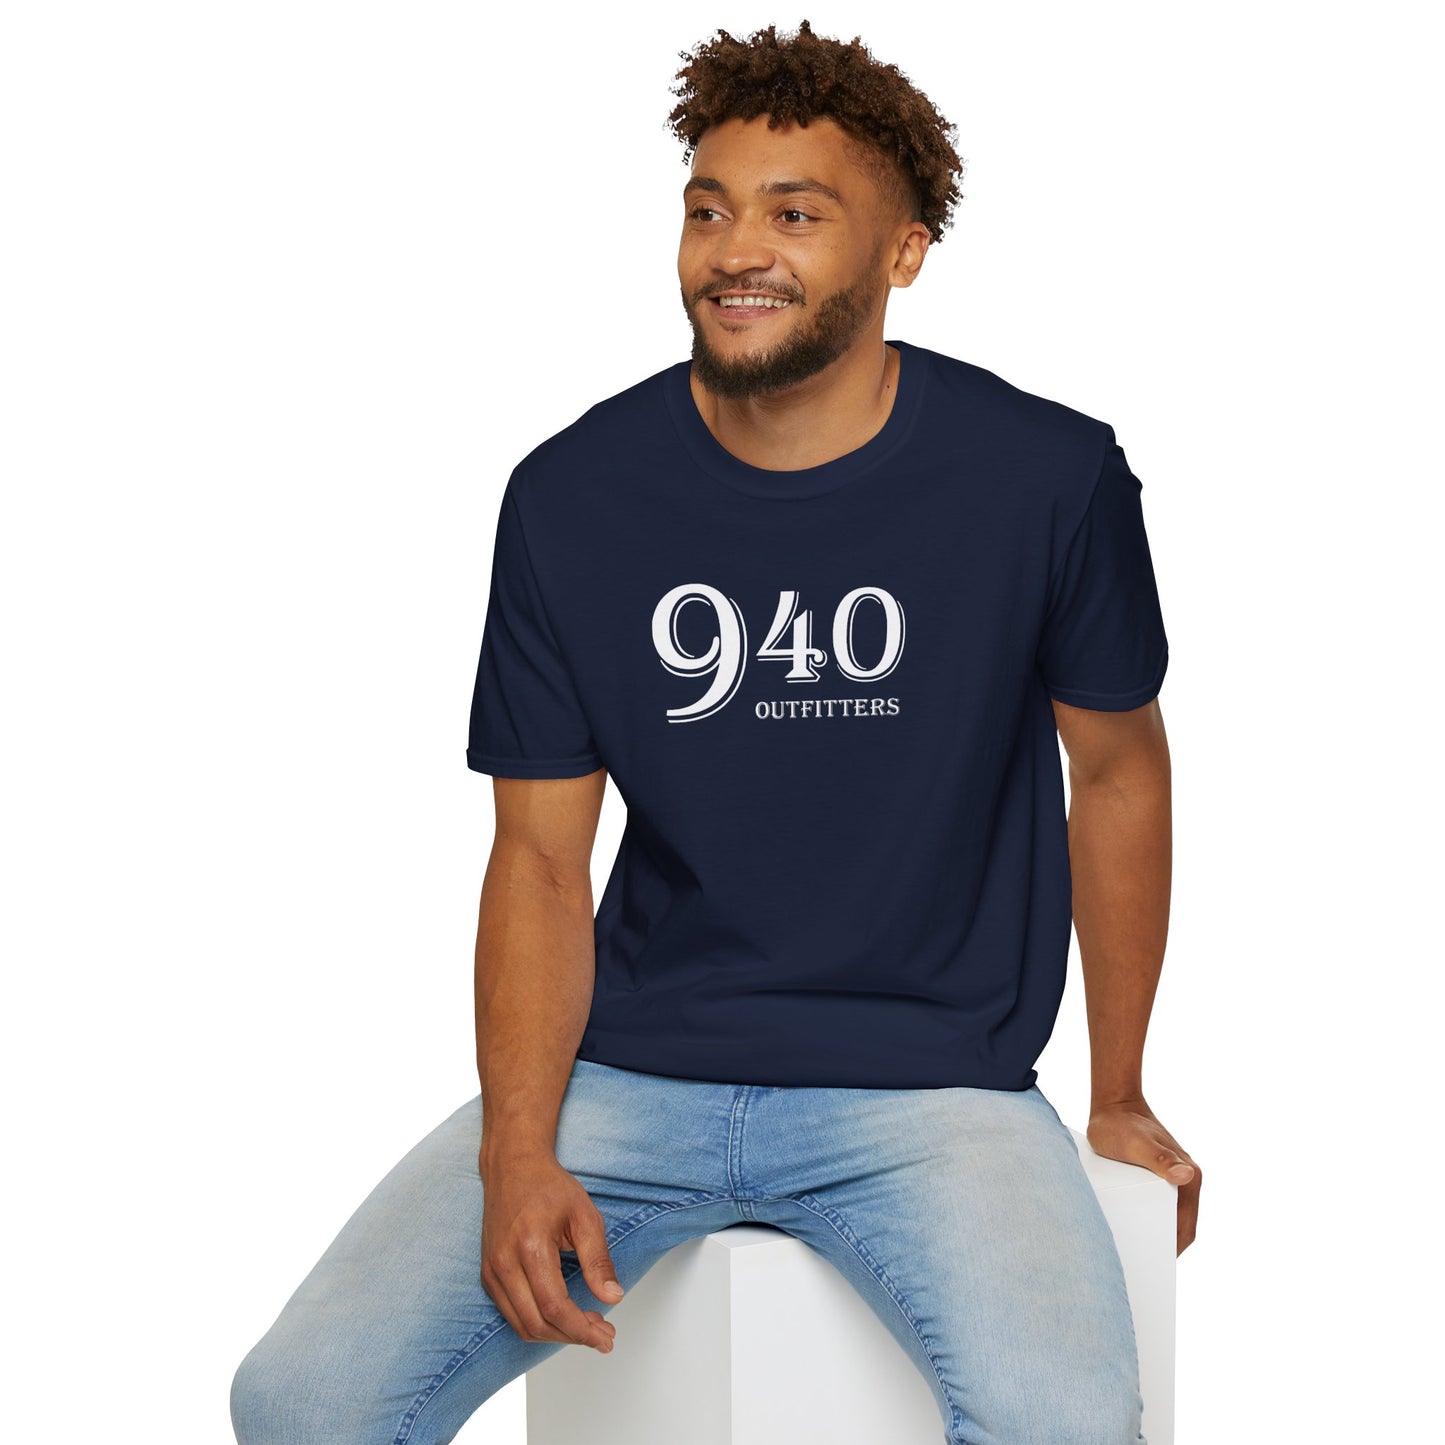 Camiseta unisex 940 proveedores